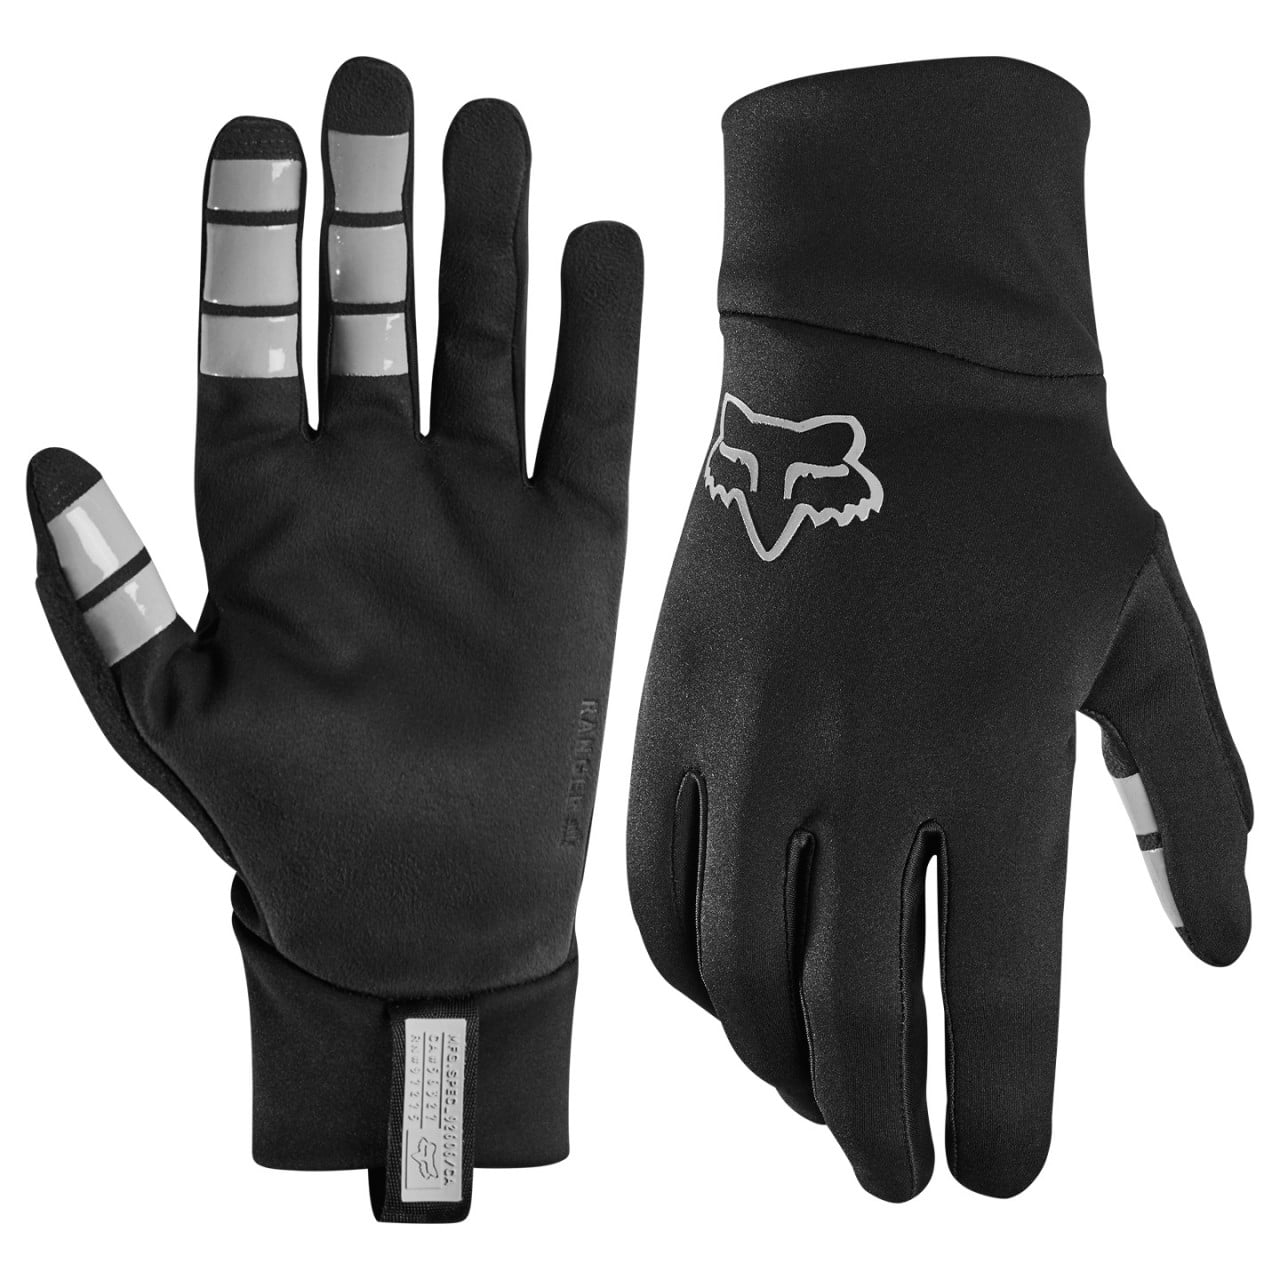 Ranger Fire Full Finger Gloves